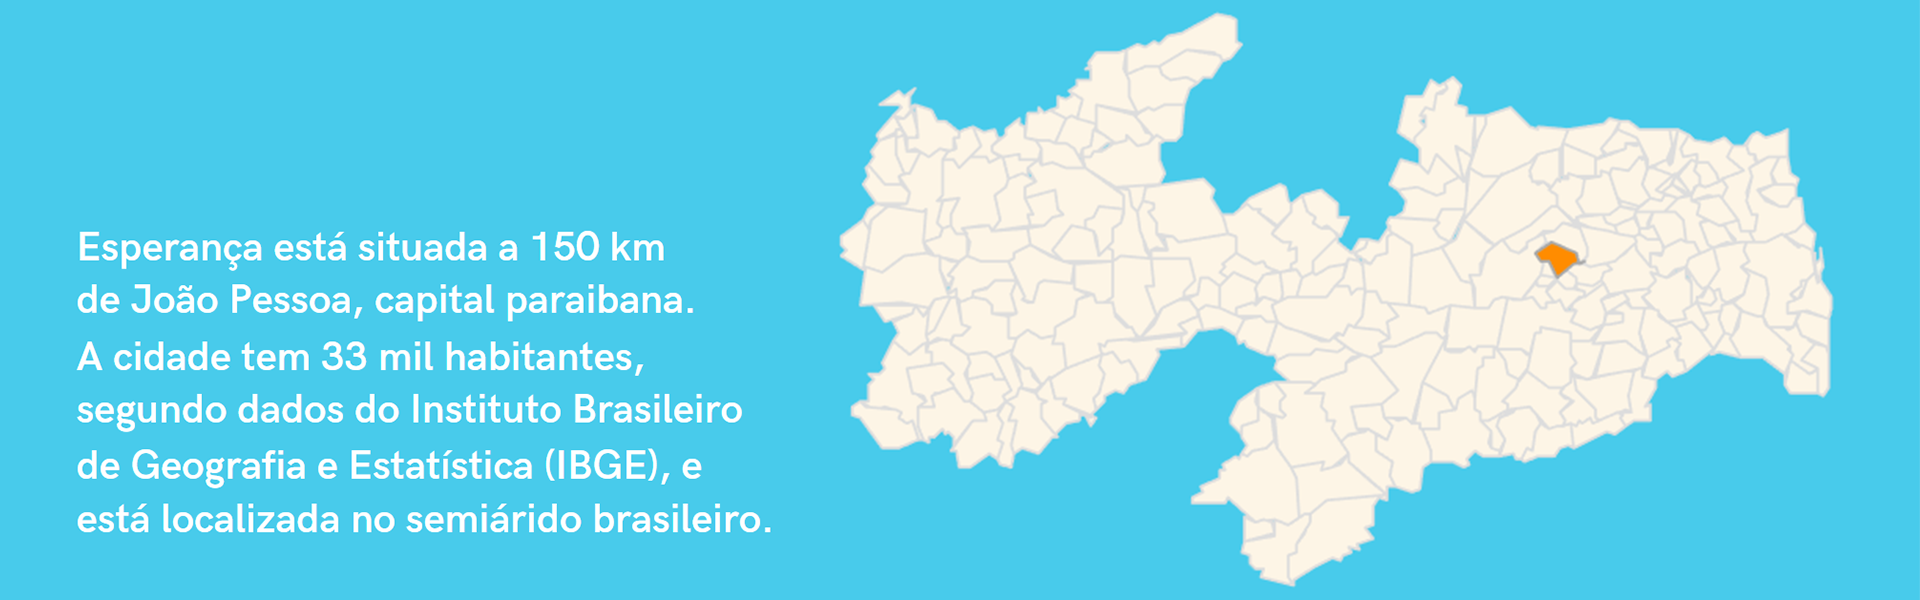 O município de Esperança está situada a 150 quilômetros de João Pessoa, capital paraibana. A cidade tem 33 mil habitantes, segundo dados do Instituto Brasileiro de Geografia e Estatística (IBGE), e está localiz